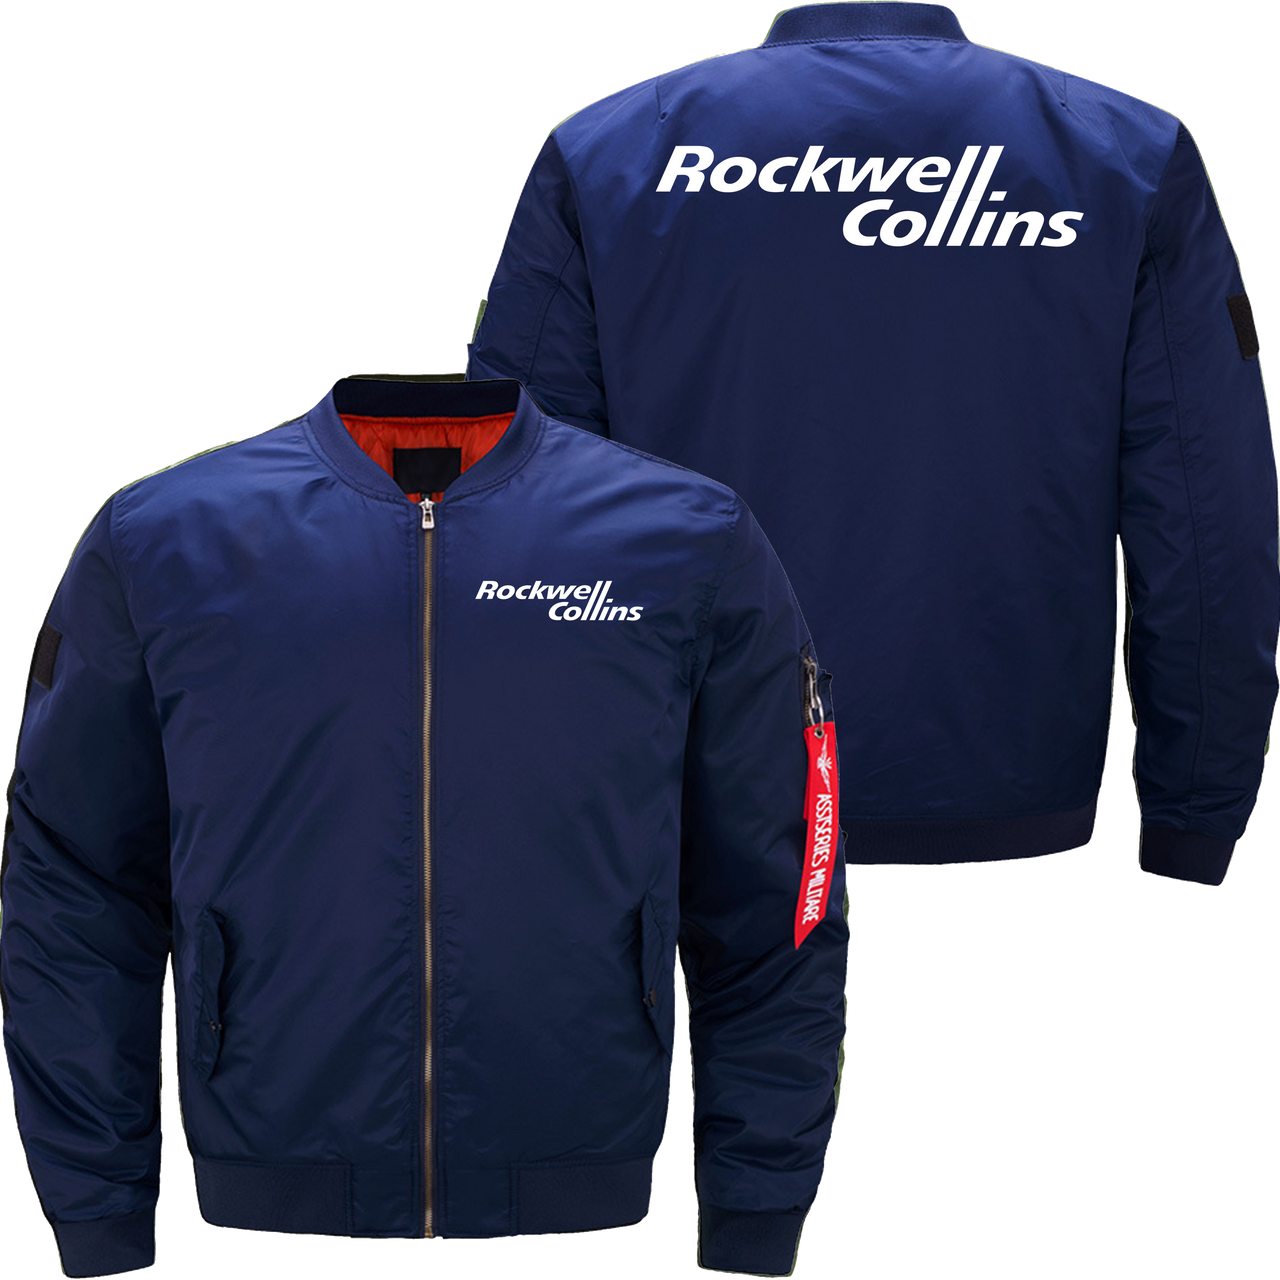 Rockwell collins Jacket